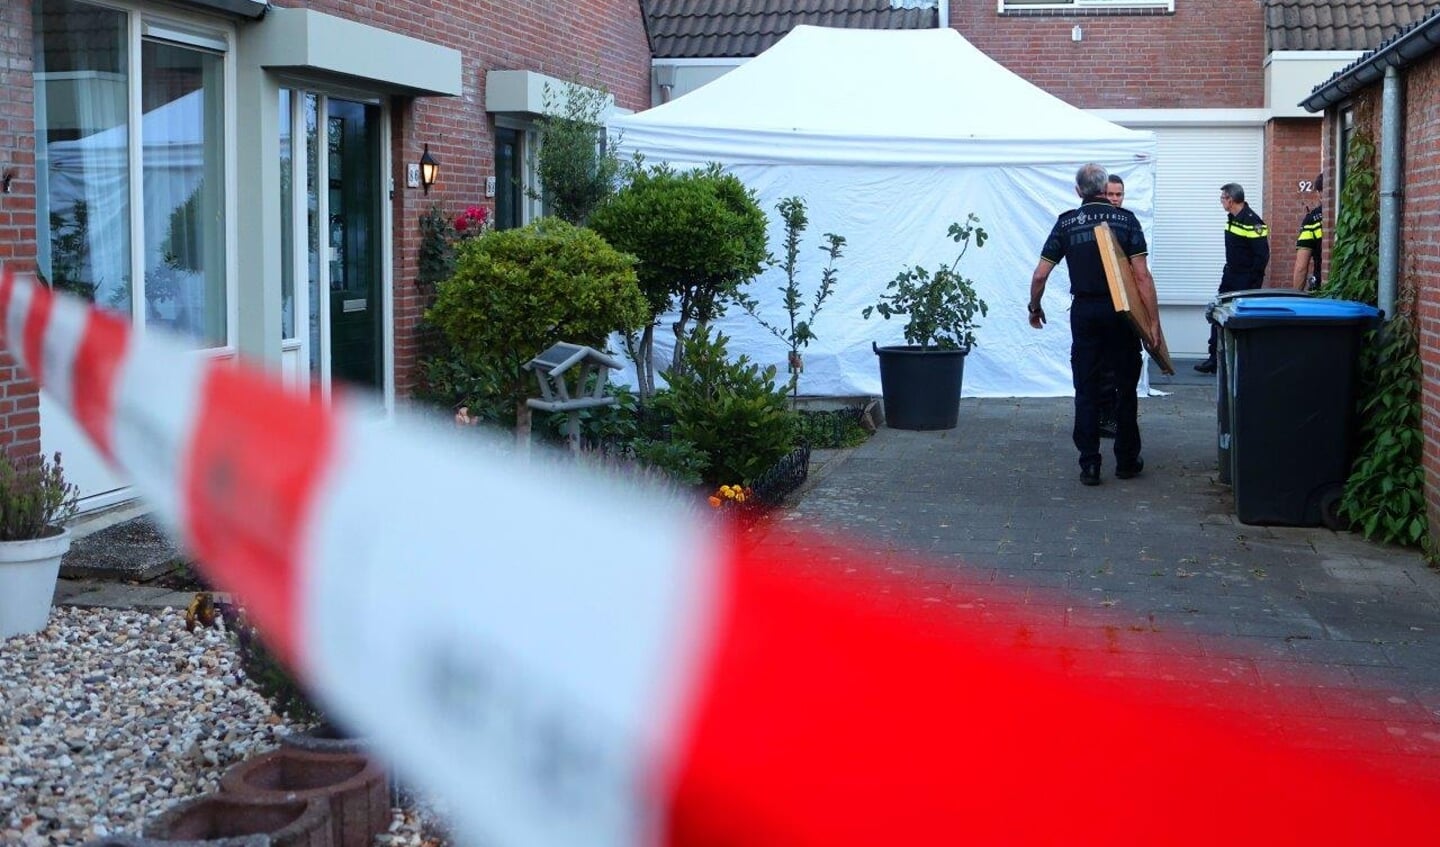 De politie heeft donderdagavond rond 20.00 uur twee lichamen aangetroffen in een woning aan de Zesde Reit in Den Bosch.